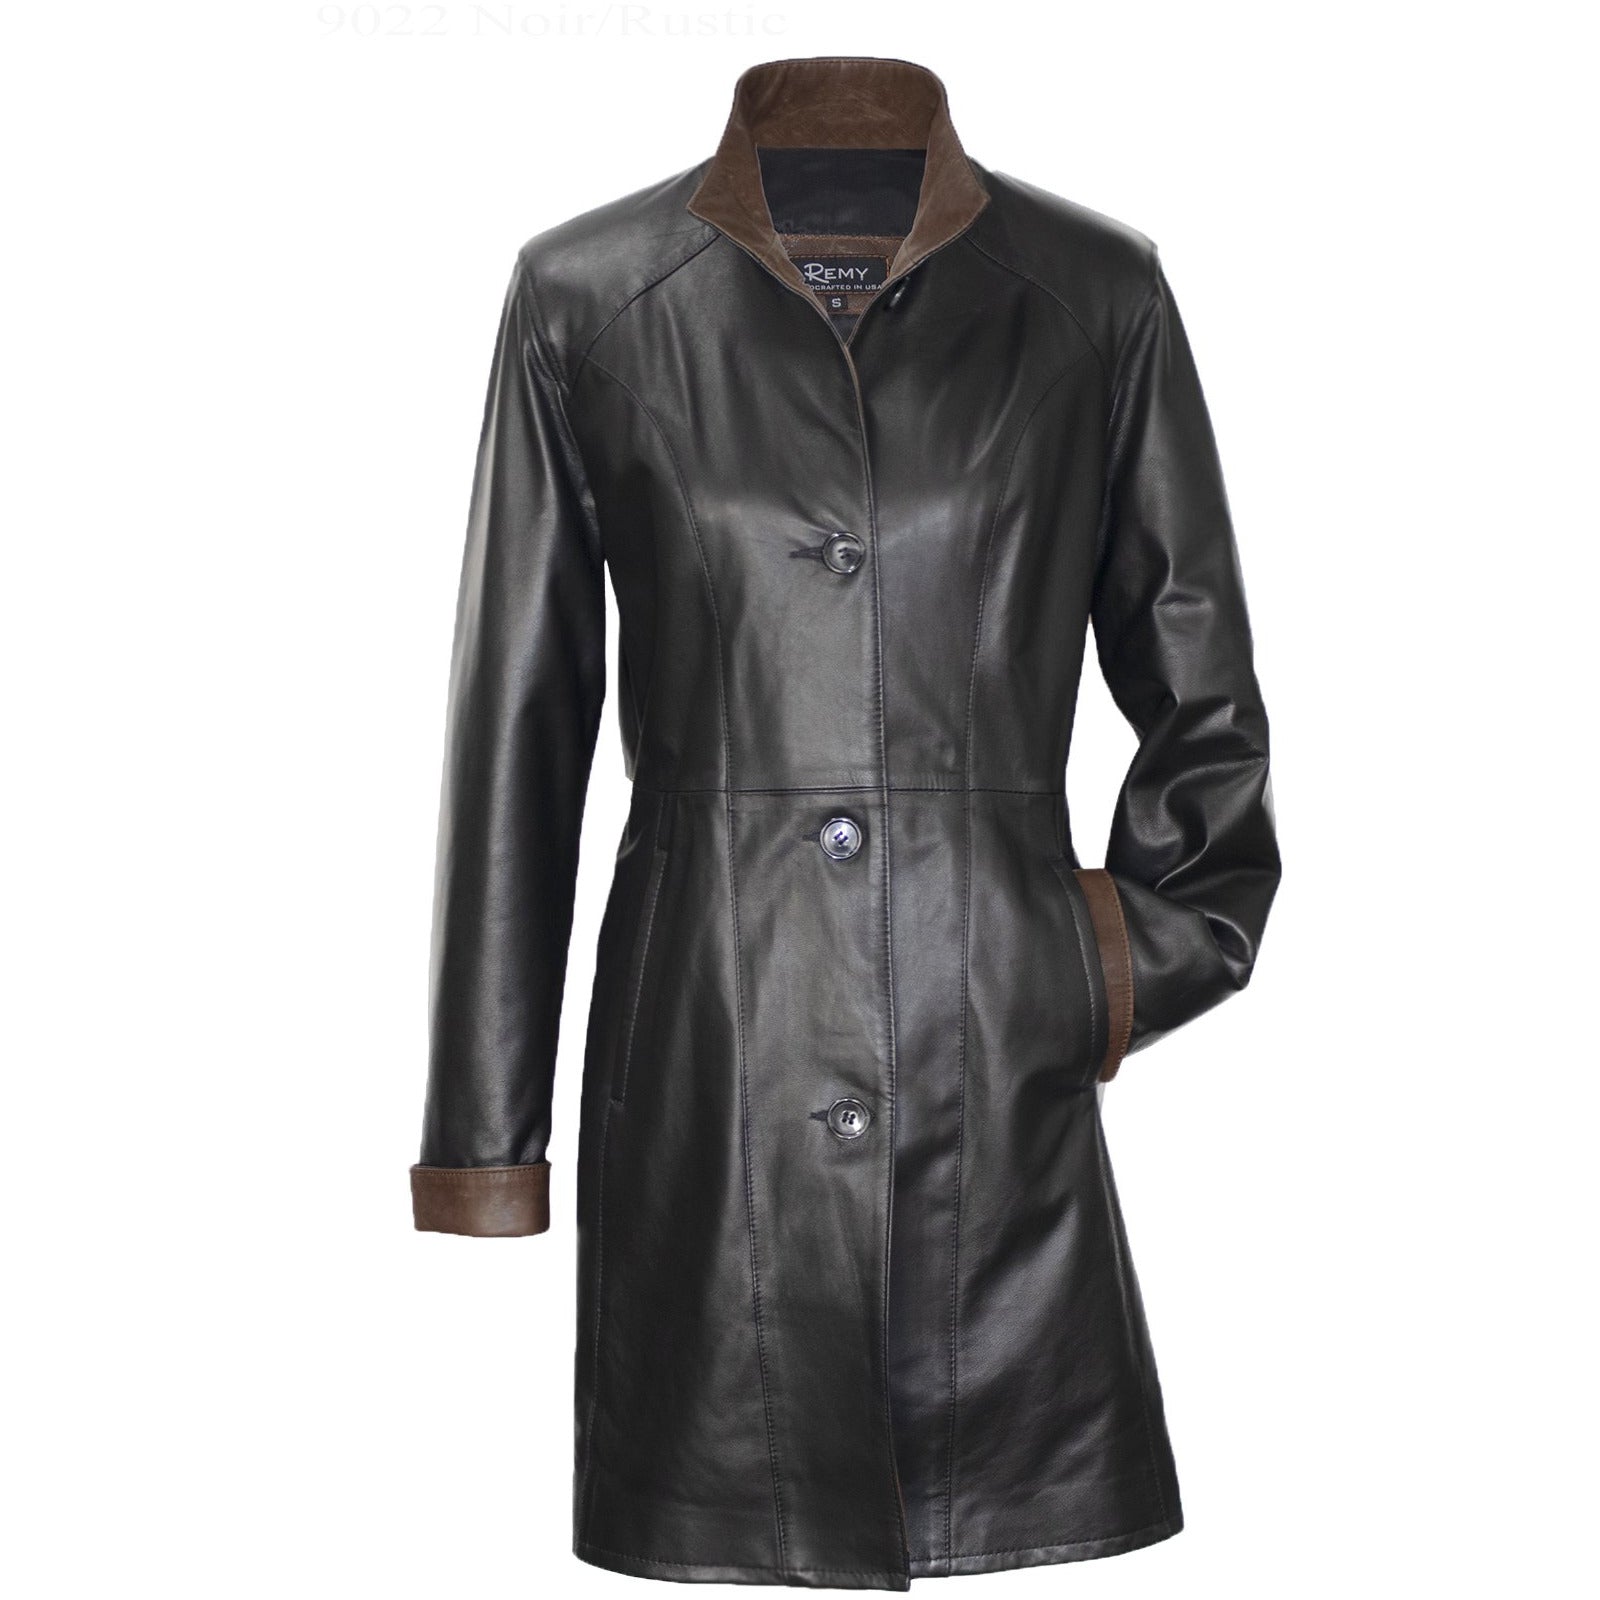 9022 - Ladies Leather Swing Coat in Noir/Rustic